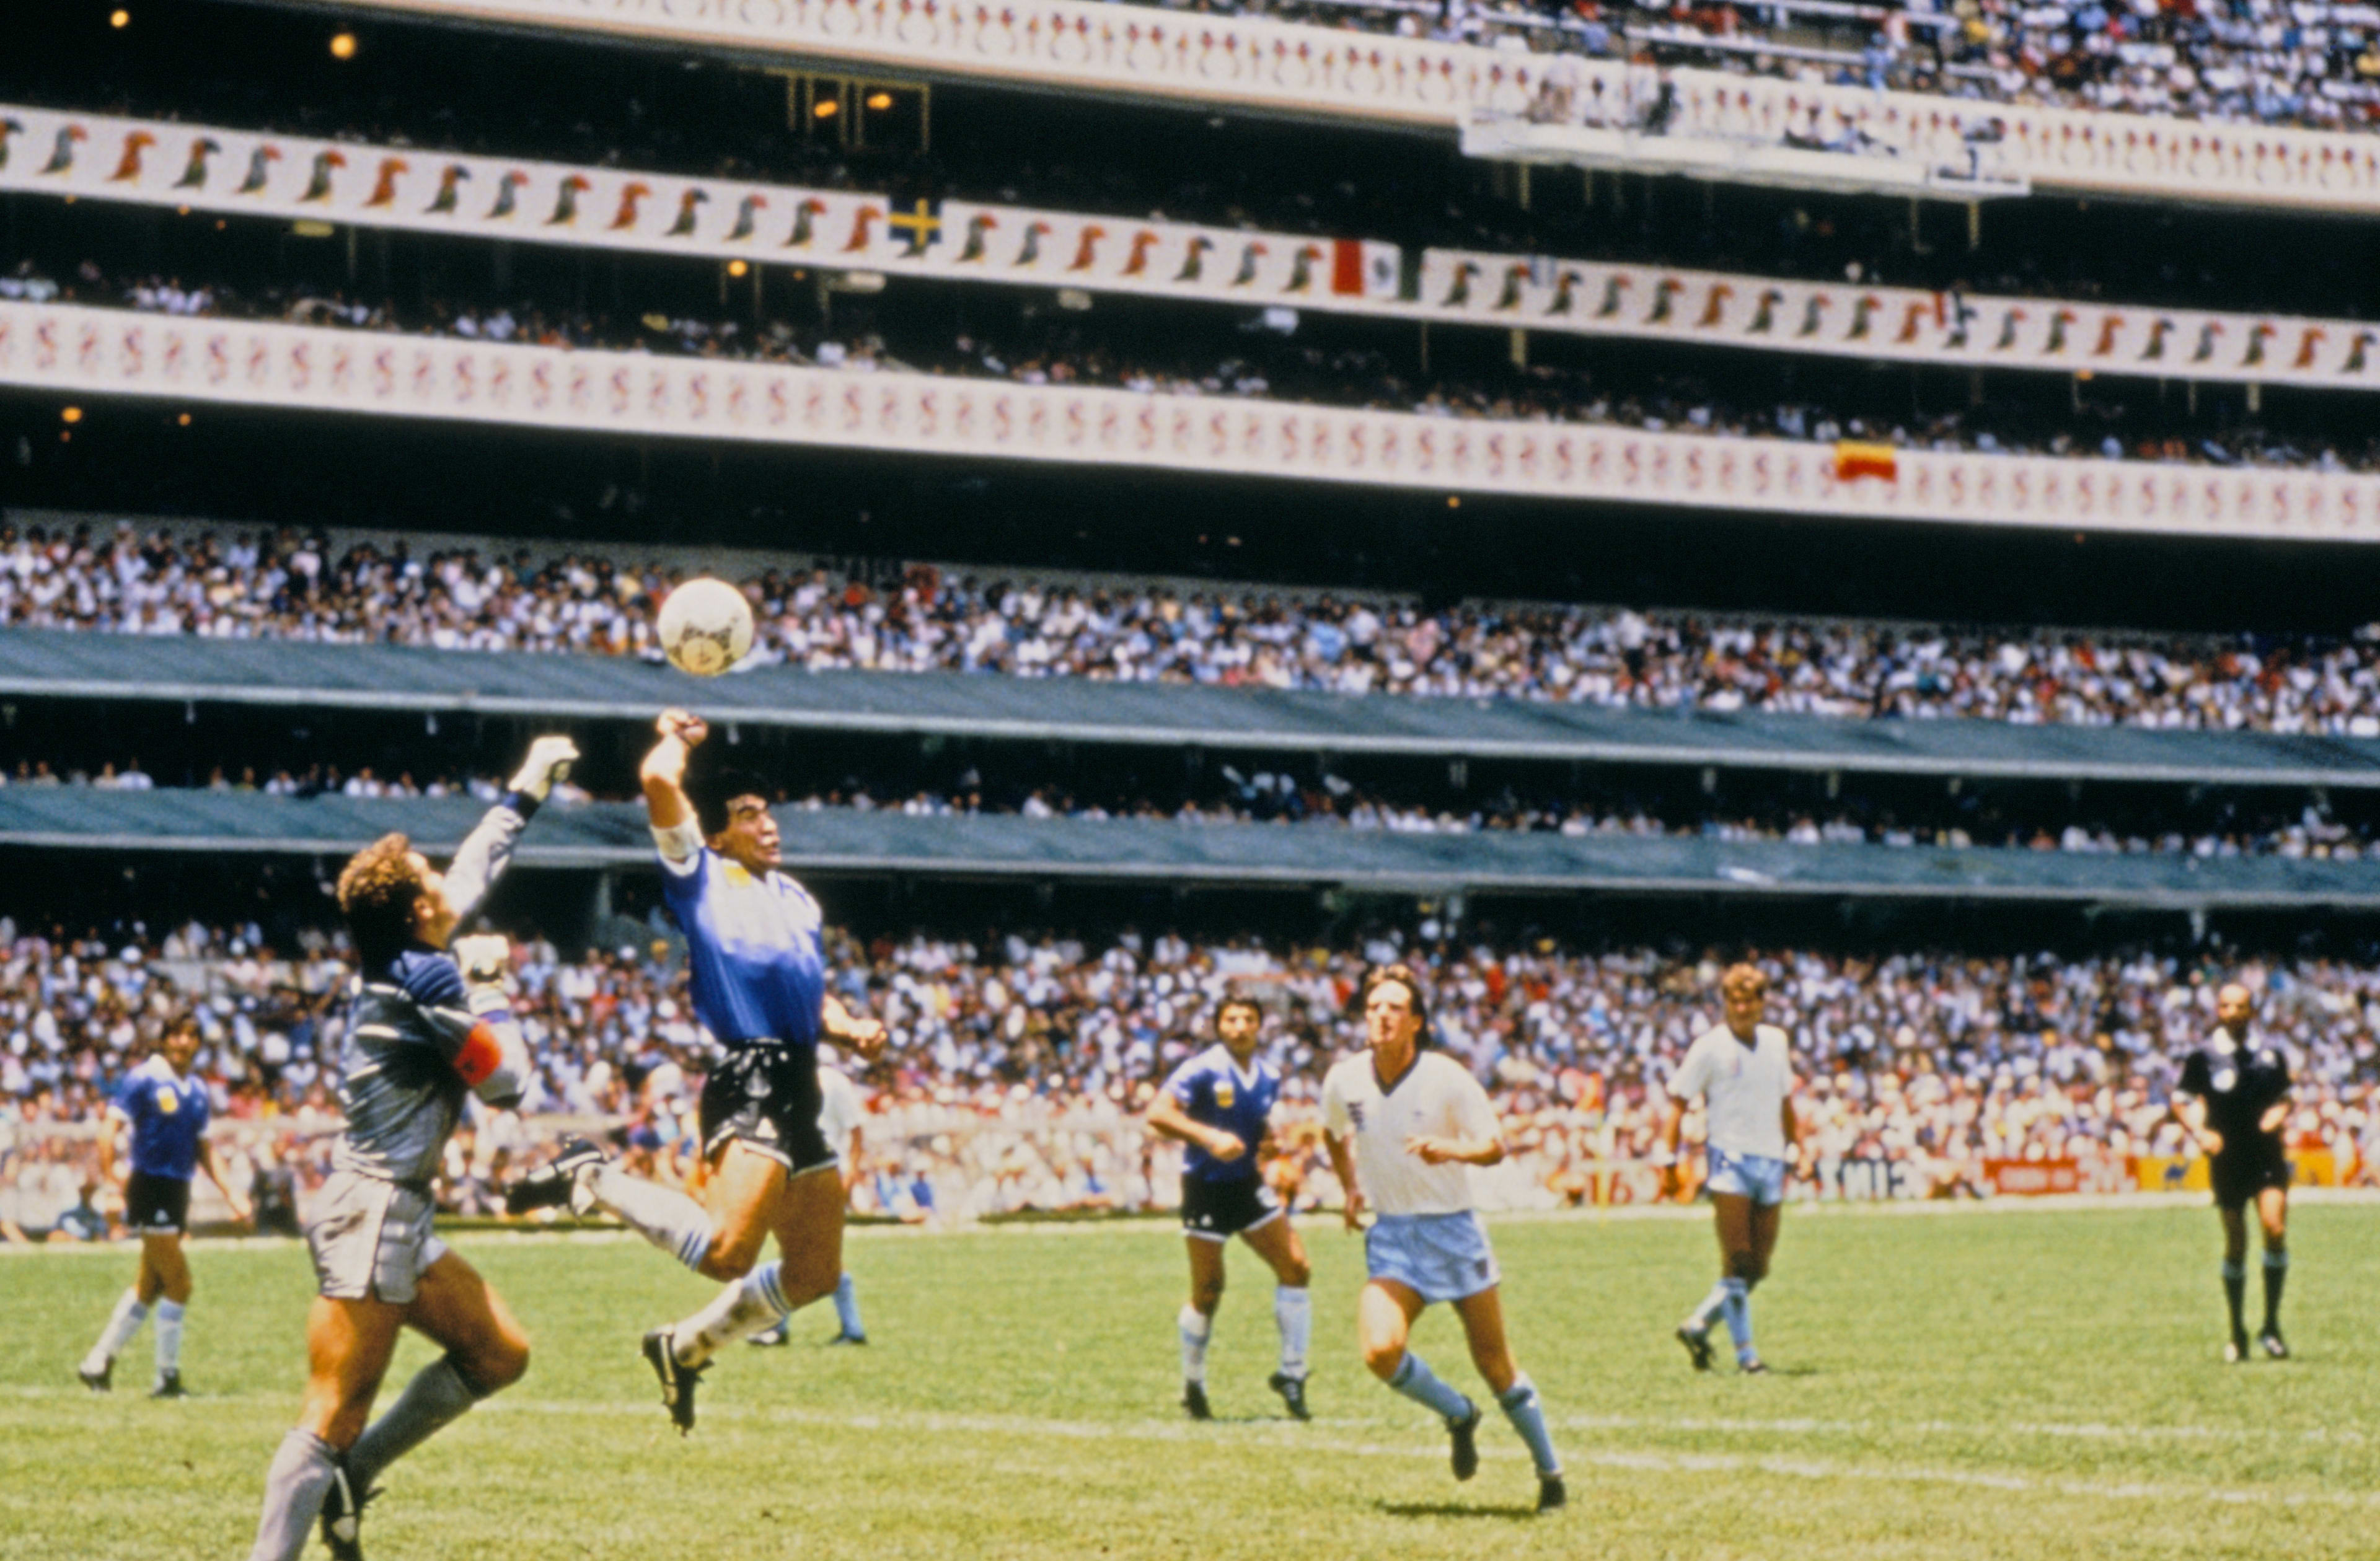 Precies 33 jaar geleden scoorde Maradona met de hand van God